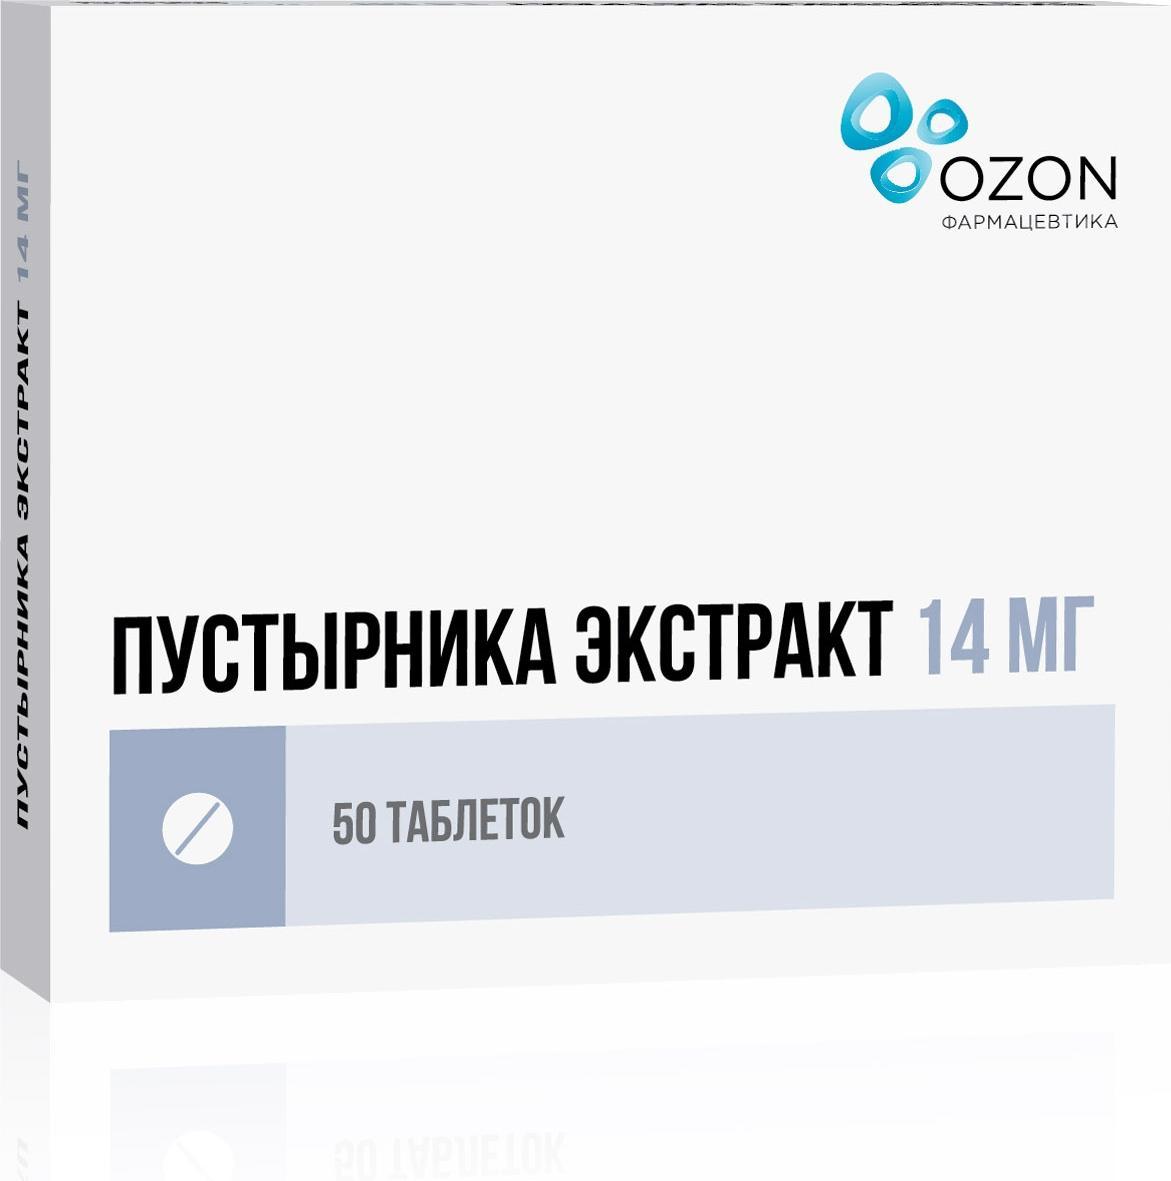 Пустырника экстракт, таблетки 14 мг (Озон), 50 шт. озон мятные таблетки 10 шт